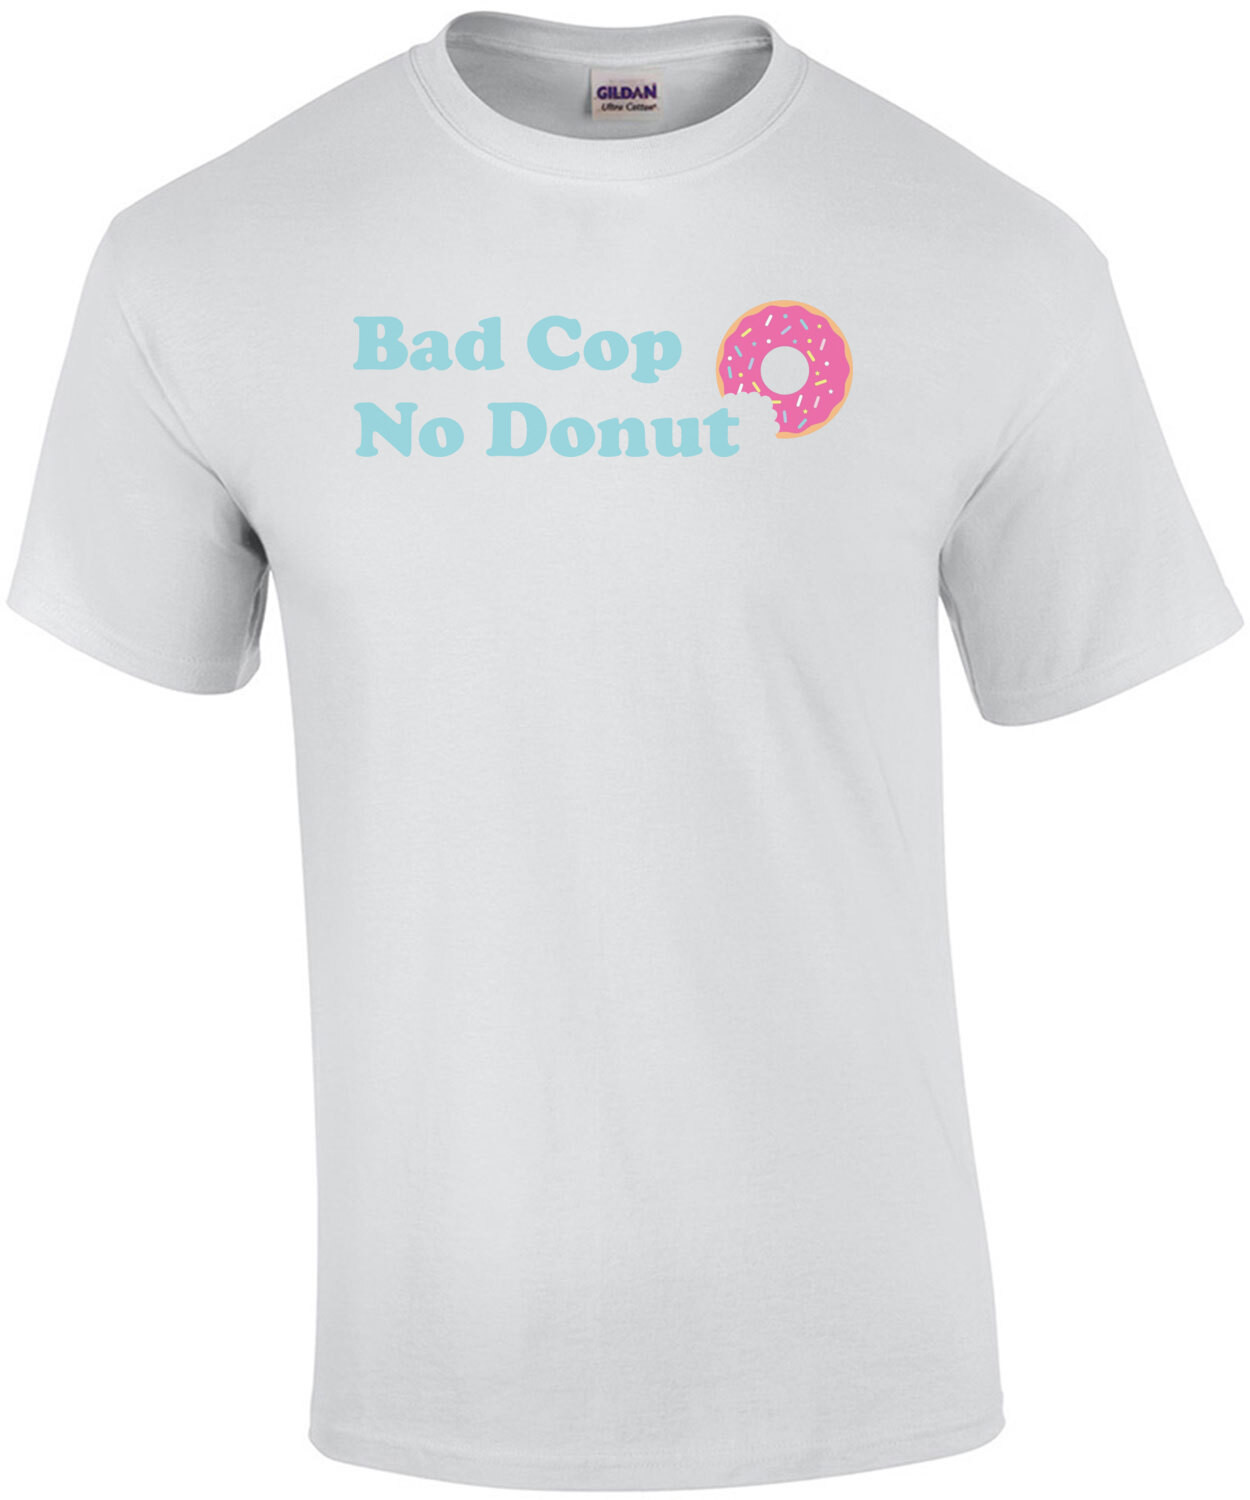 Bad Cop, No Donut Shirt